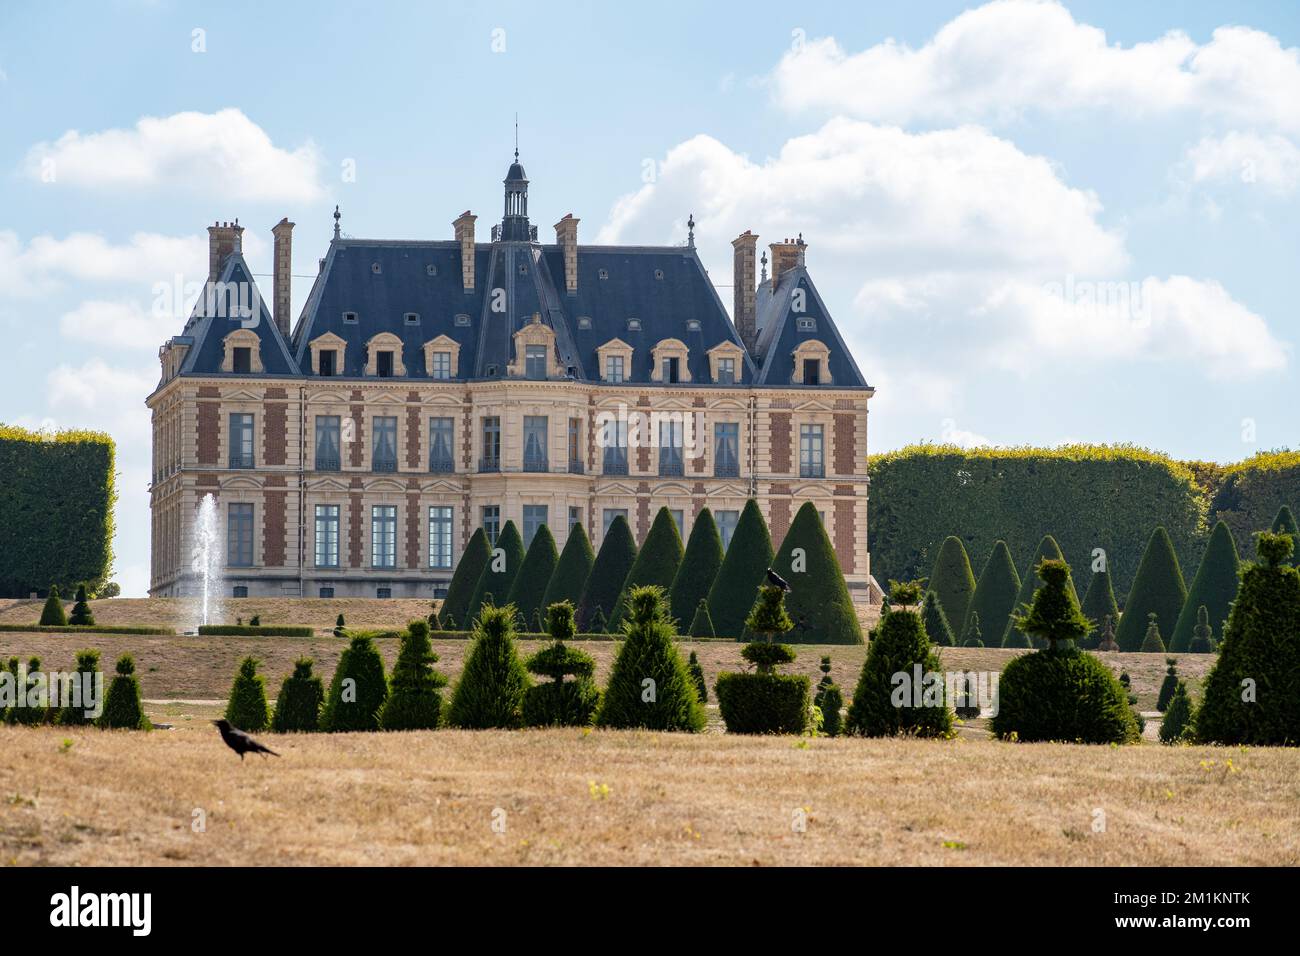 Garden and facade of Sceaux castle - France, Ile-de-france Stock Photo